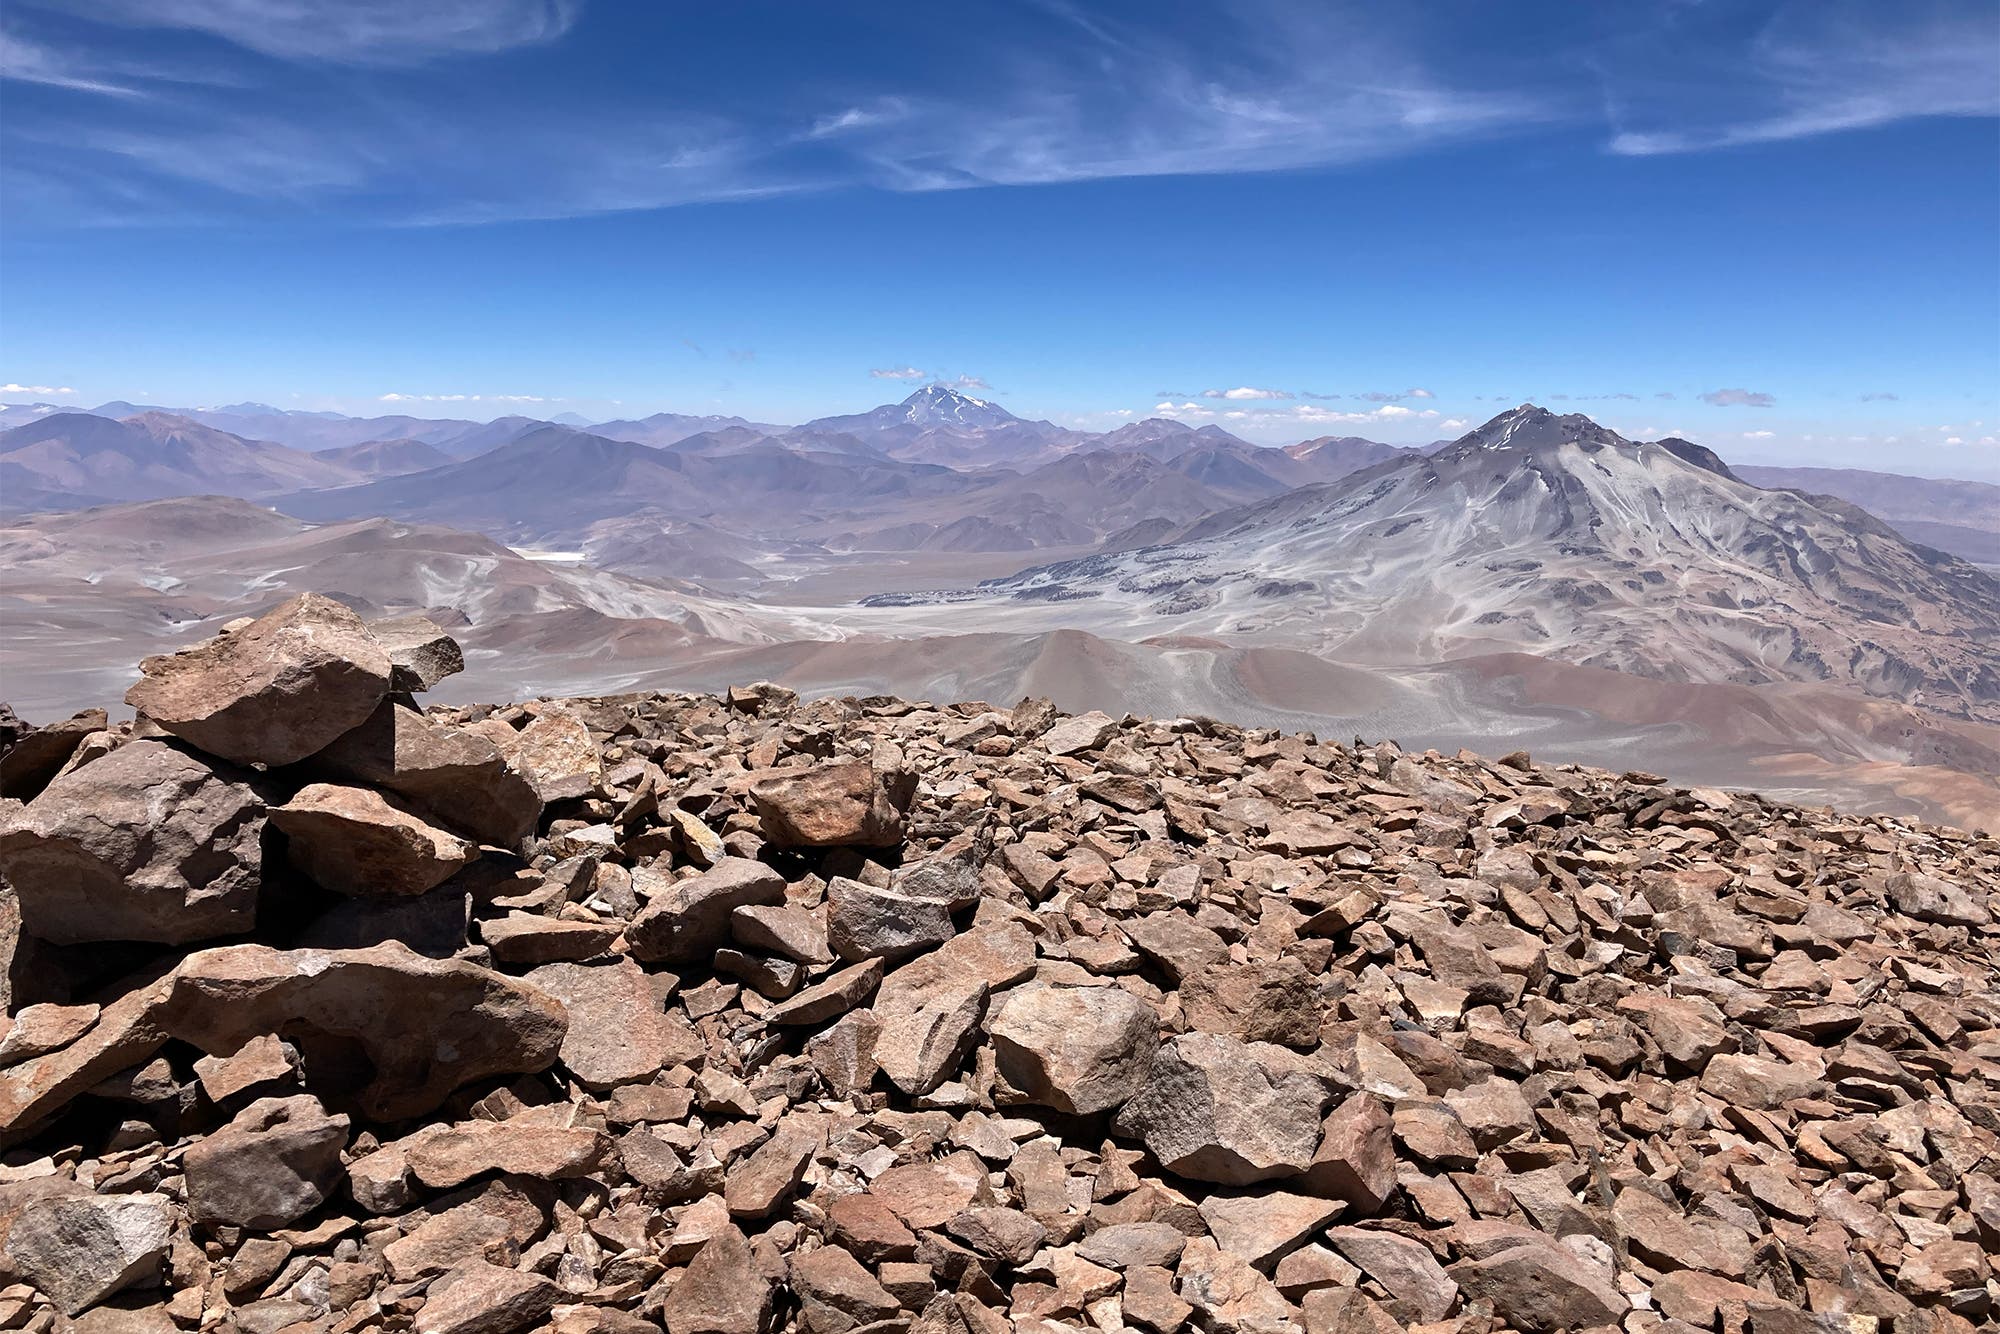 Vista panorámica de los picos volcánicos de Atacama: en primer plano hay un guijarro marrón, al fondo se pueden ver algunos volcanes, el cielo es azul, el resto tiene diferentes tonalidades de marrón.